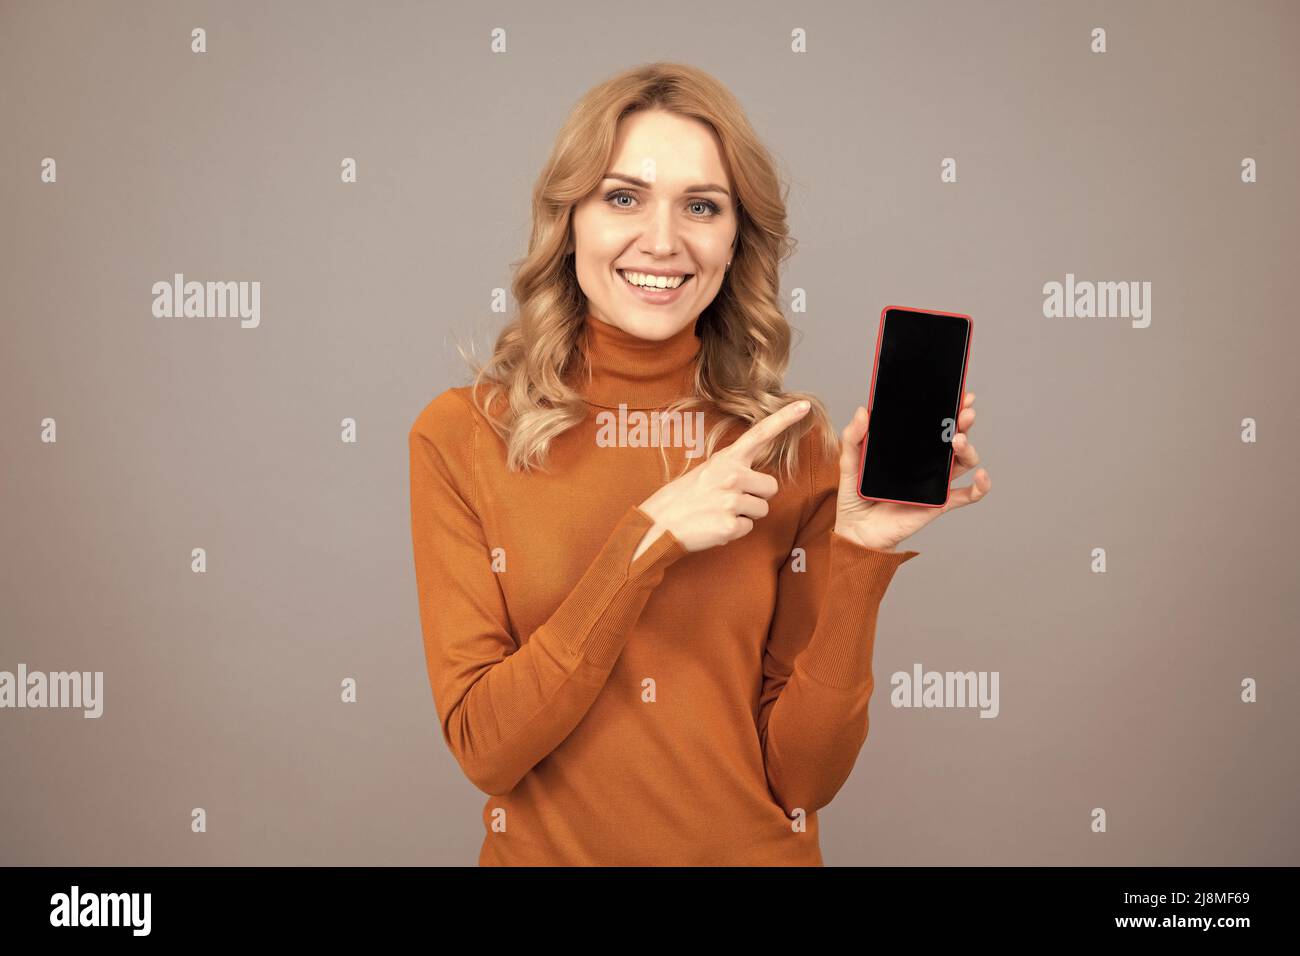 Anuncio publicitario de anuncios móviles fotografías imágenes alta - Alamy